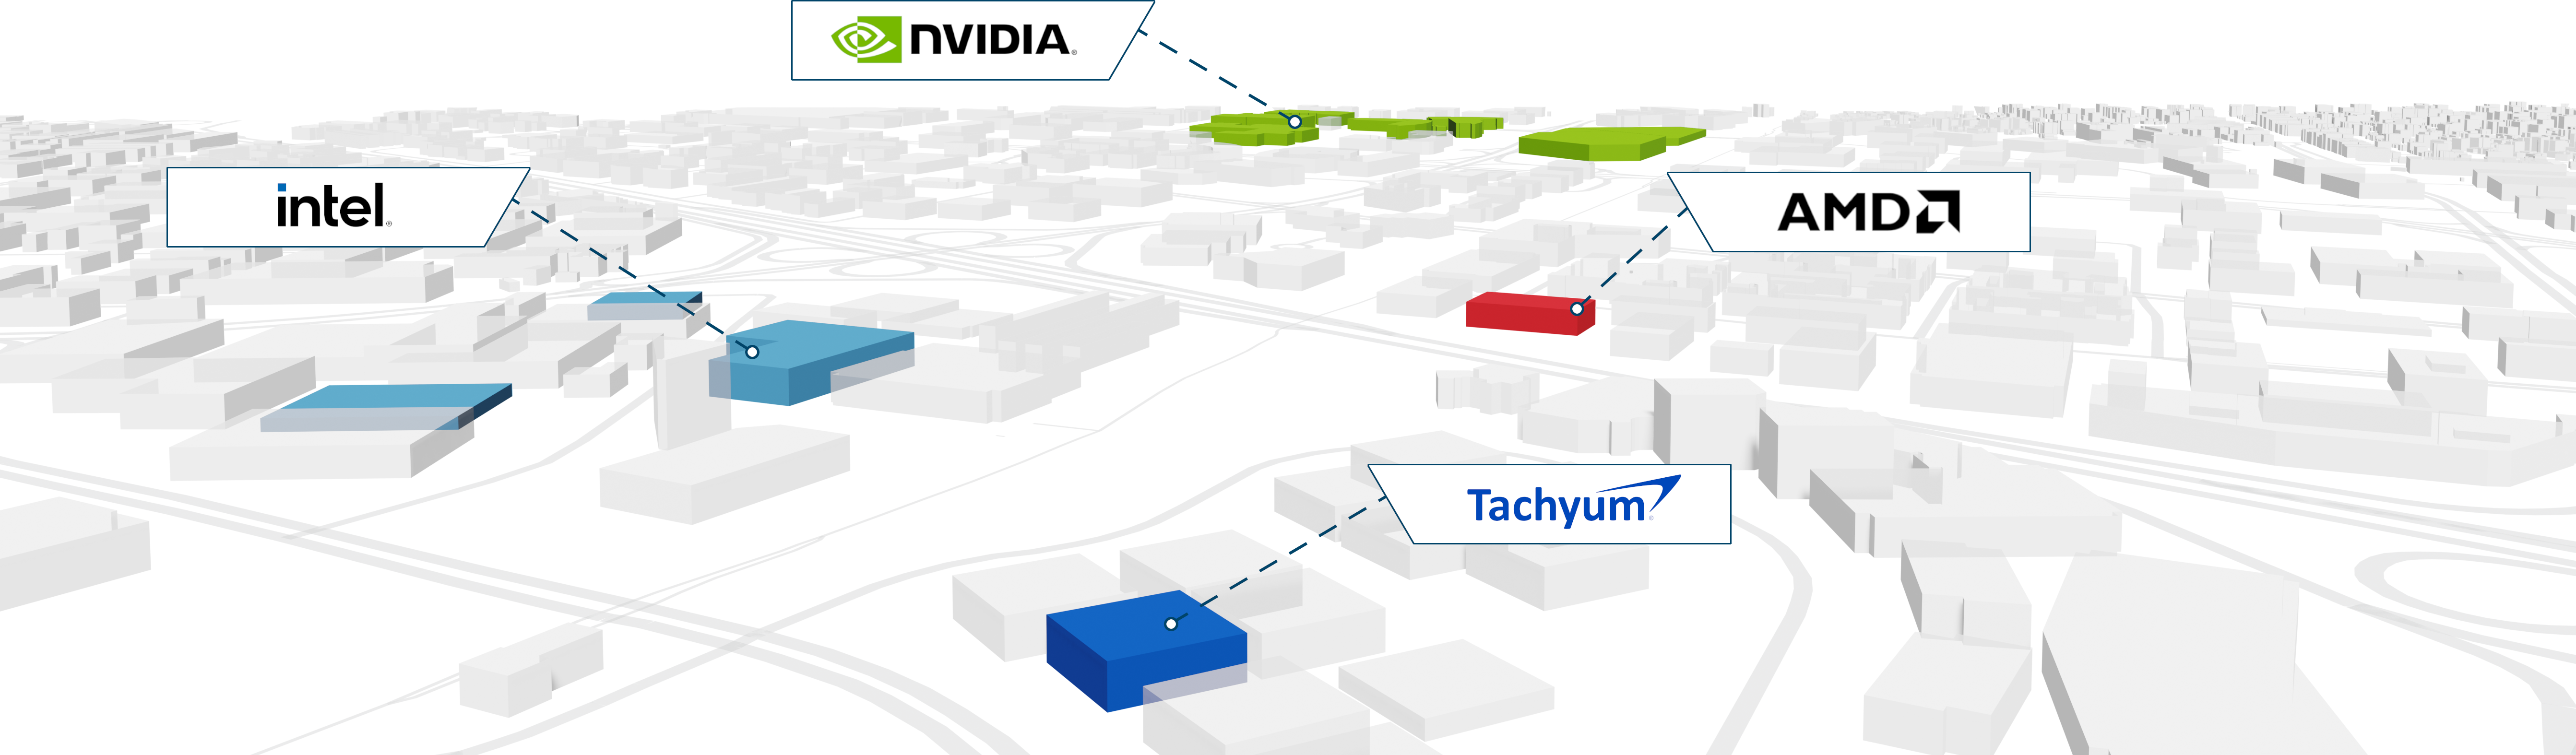 Tachyum among tech giants